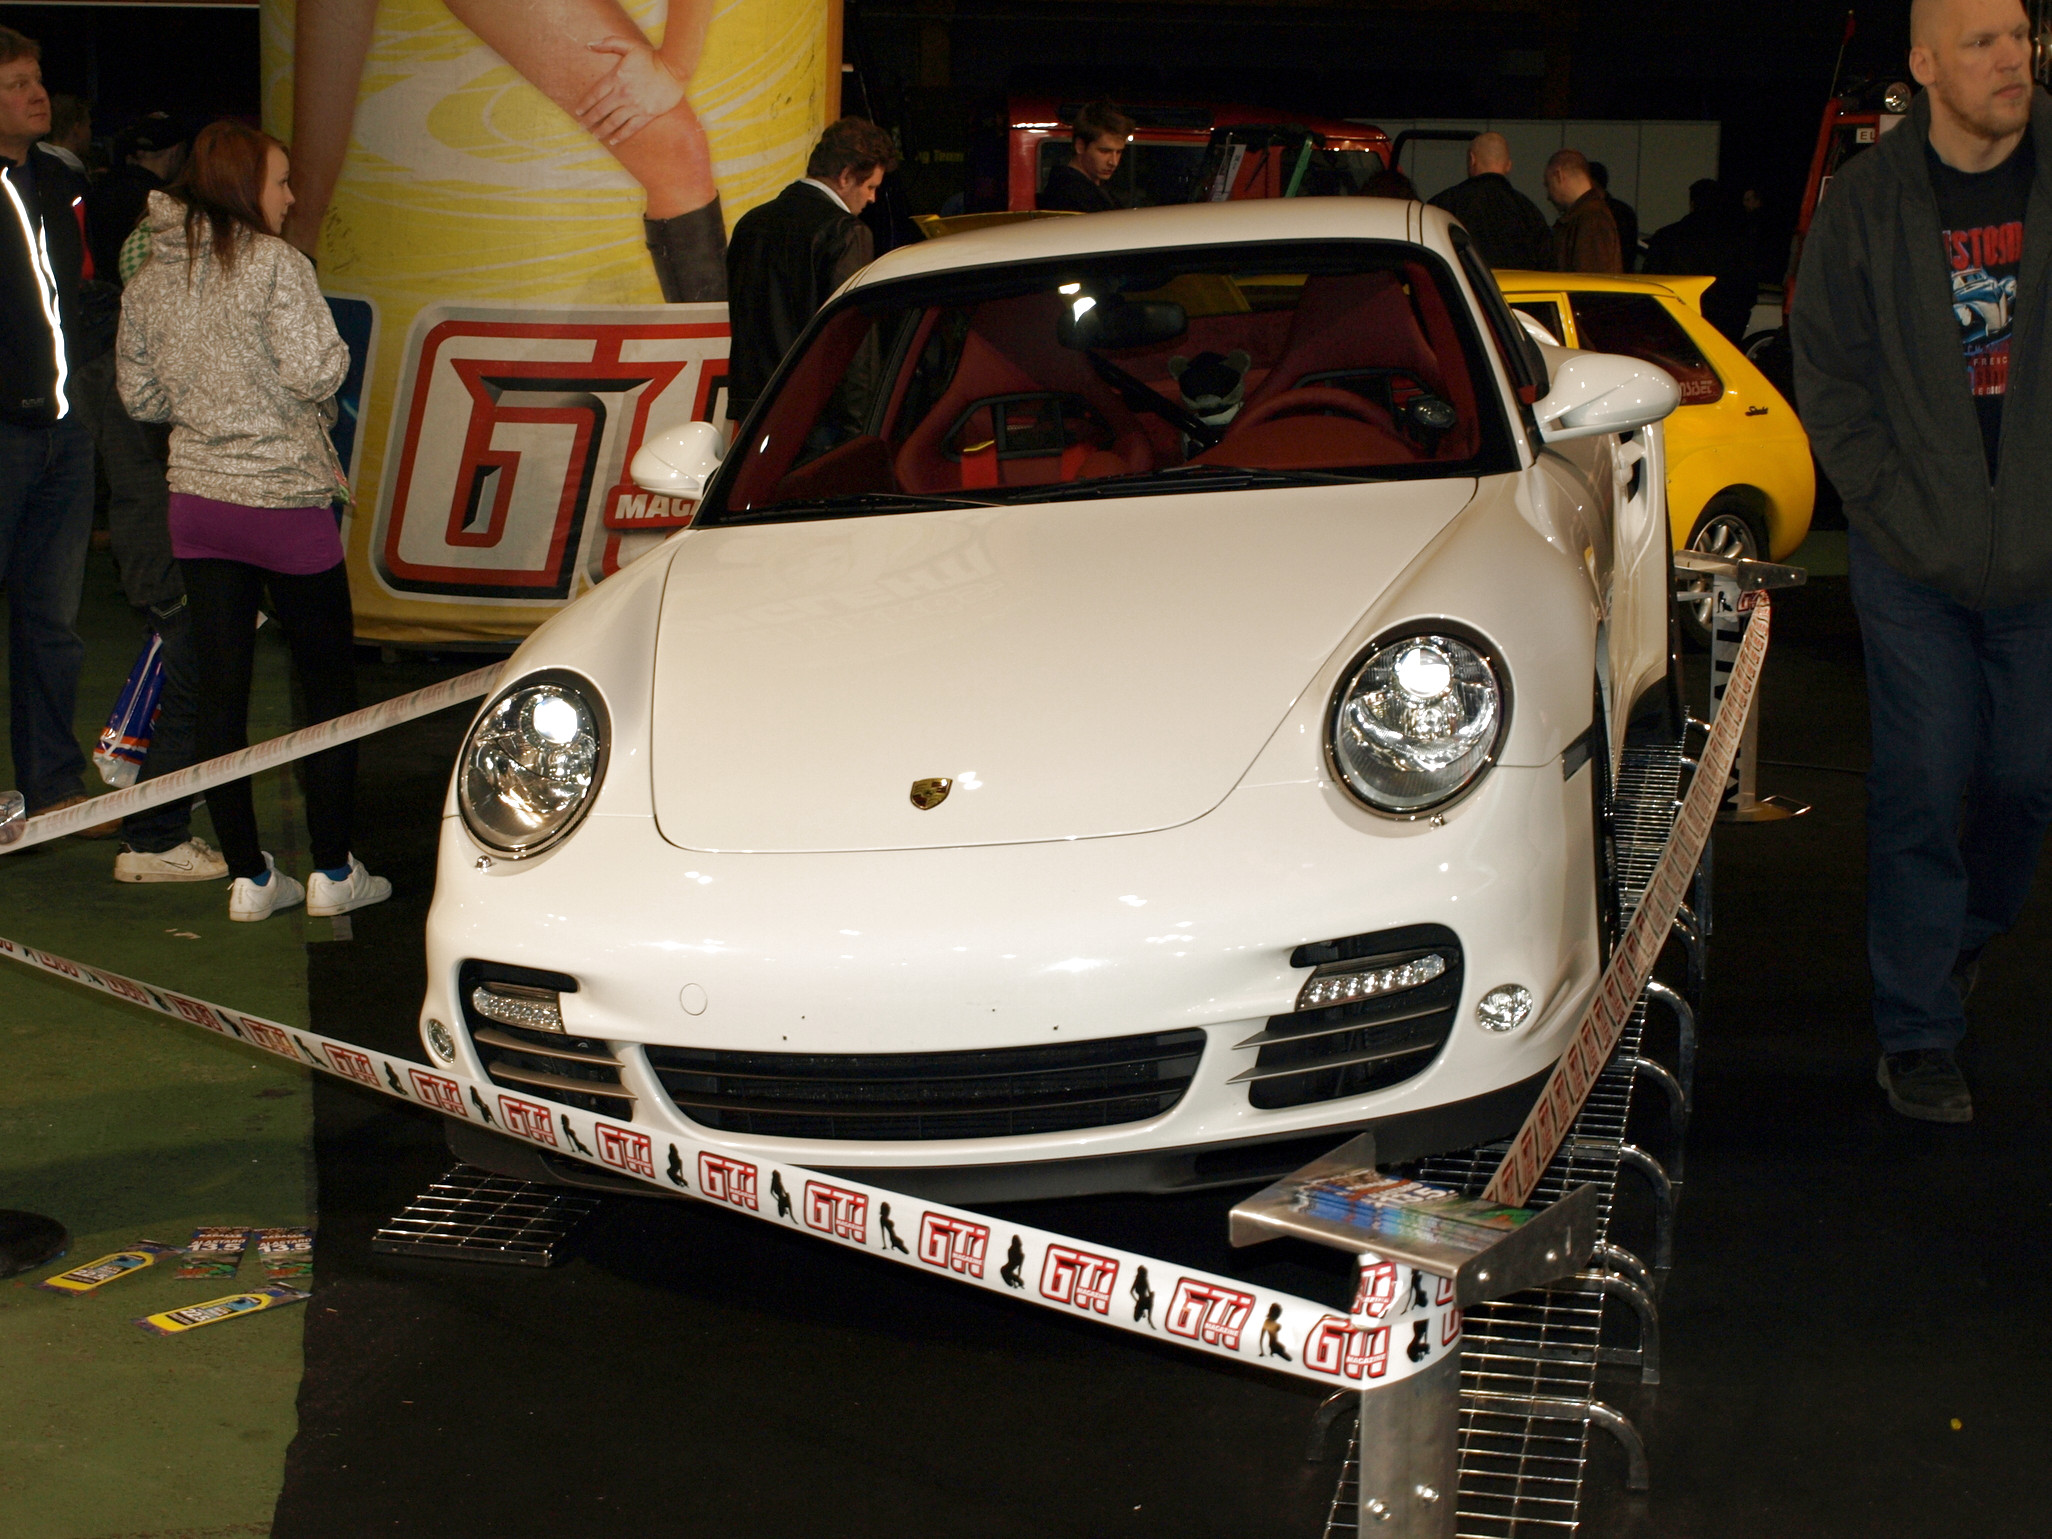 Hot Rod & Rock Show 2010, Valkoinen Porsche